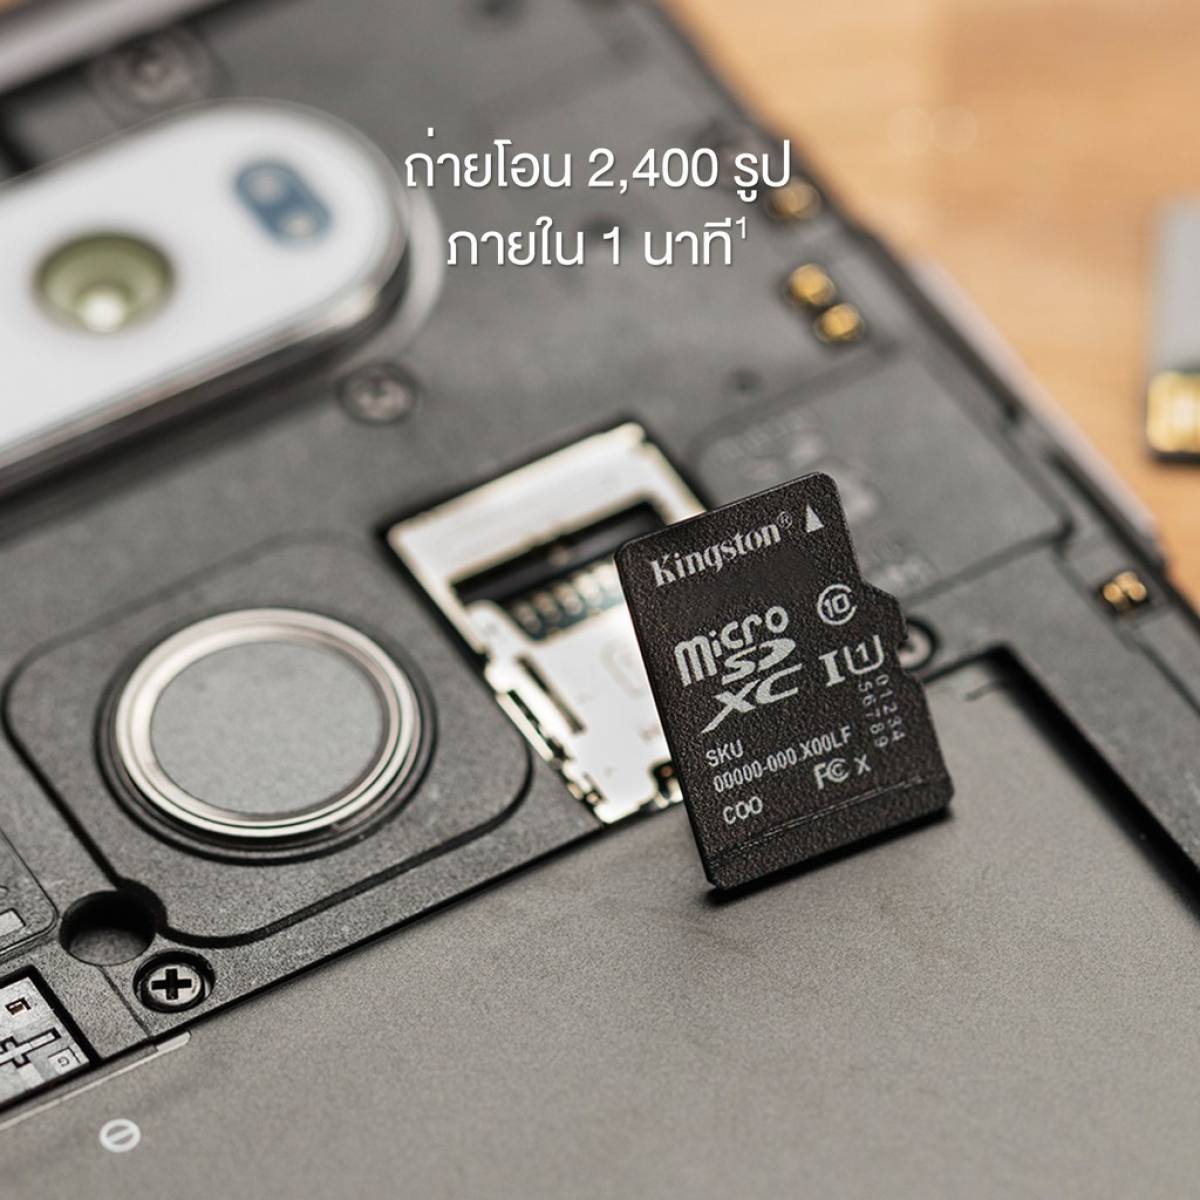 รายละเอียดเพิ่มเติมเกี่ยวกับ [[ของแท้]] เมมโมรี่การ์ดแท้Kingston MicroSD Card ความเร็ว 100MB/S ความจุ 16GB/32GB/64GB Class 10มีการรับประกันจากผู้ให้บริการ ตลอดการใช้งาน